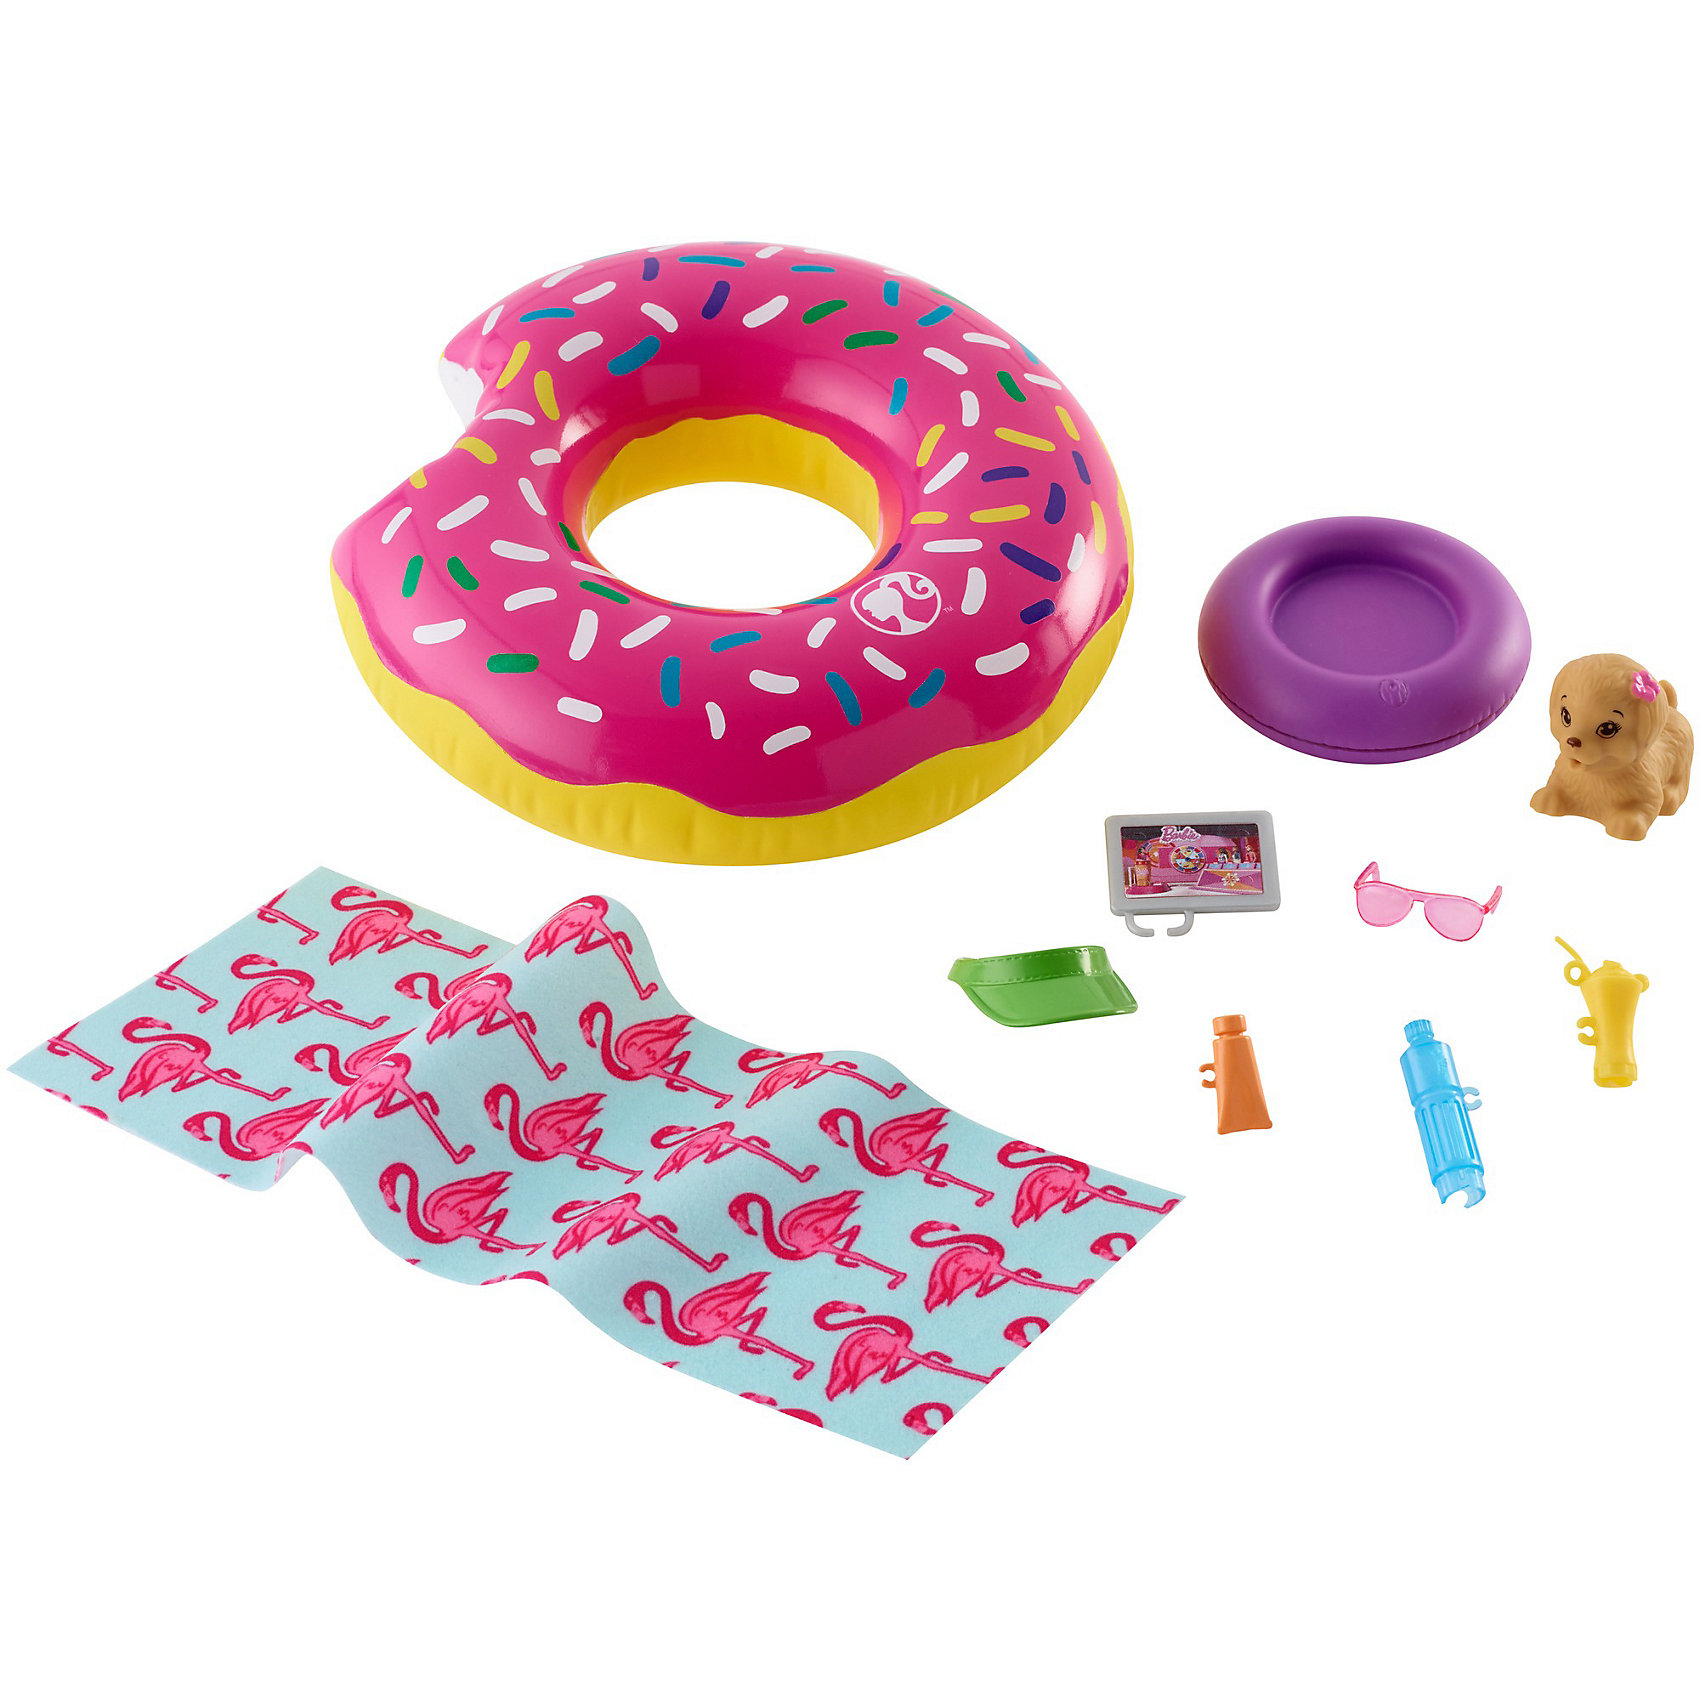 Игровой набор 'надувной круг', Barbie, Mattel fxg38.